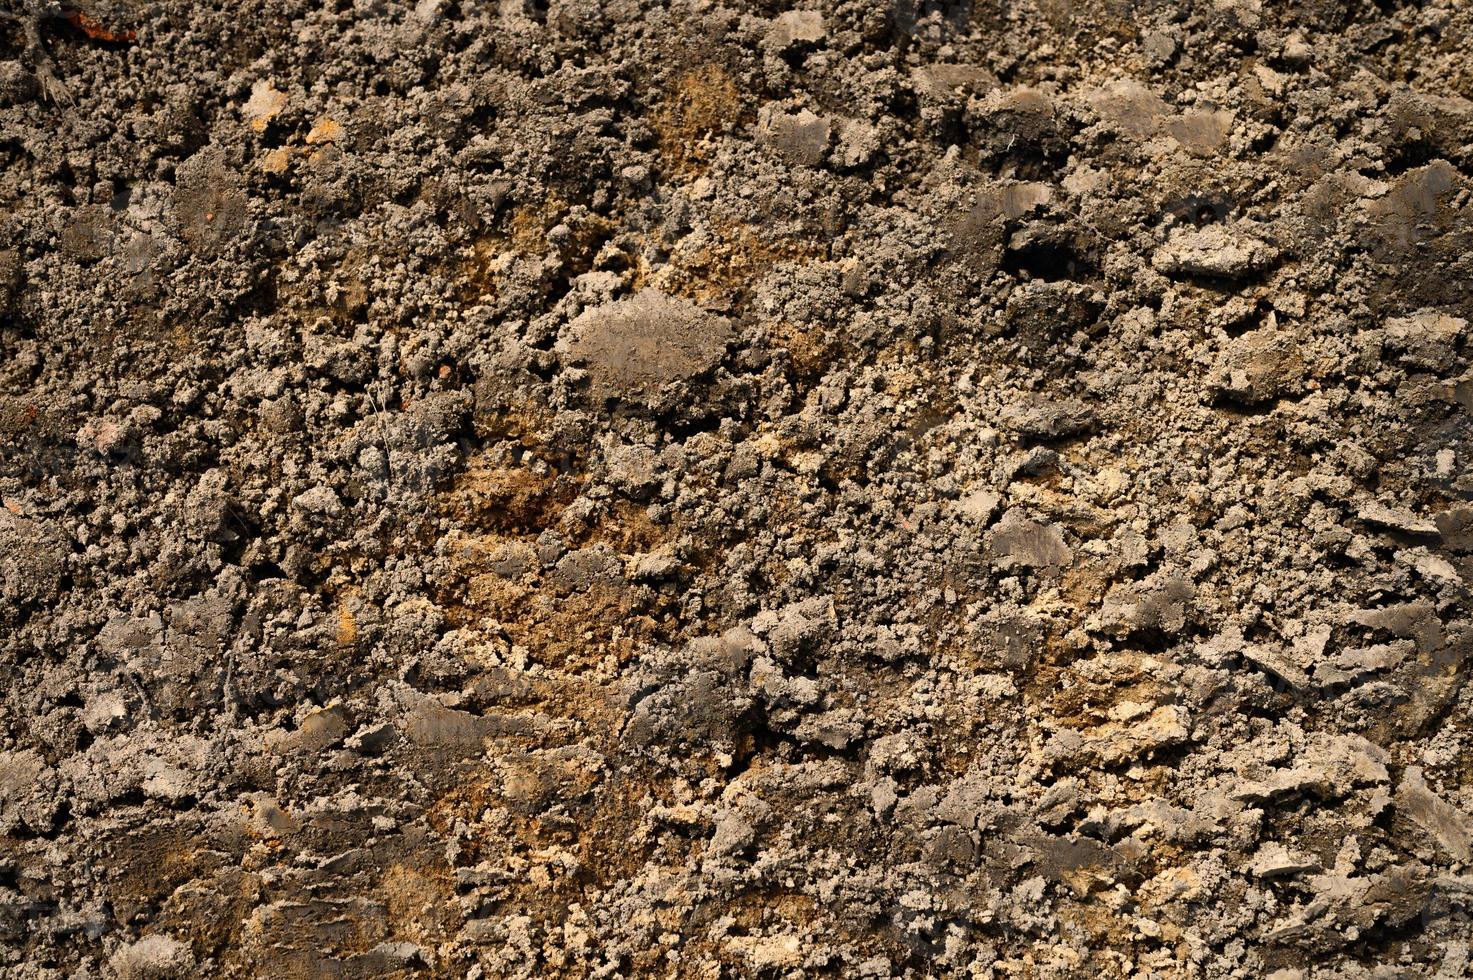 textura de fundo da superfície solta da areia e do solo foto